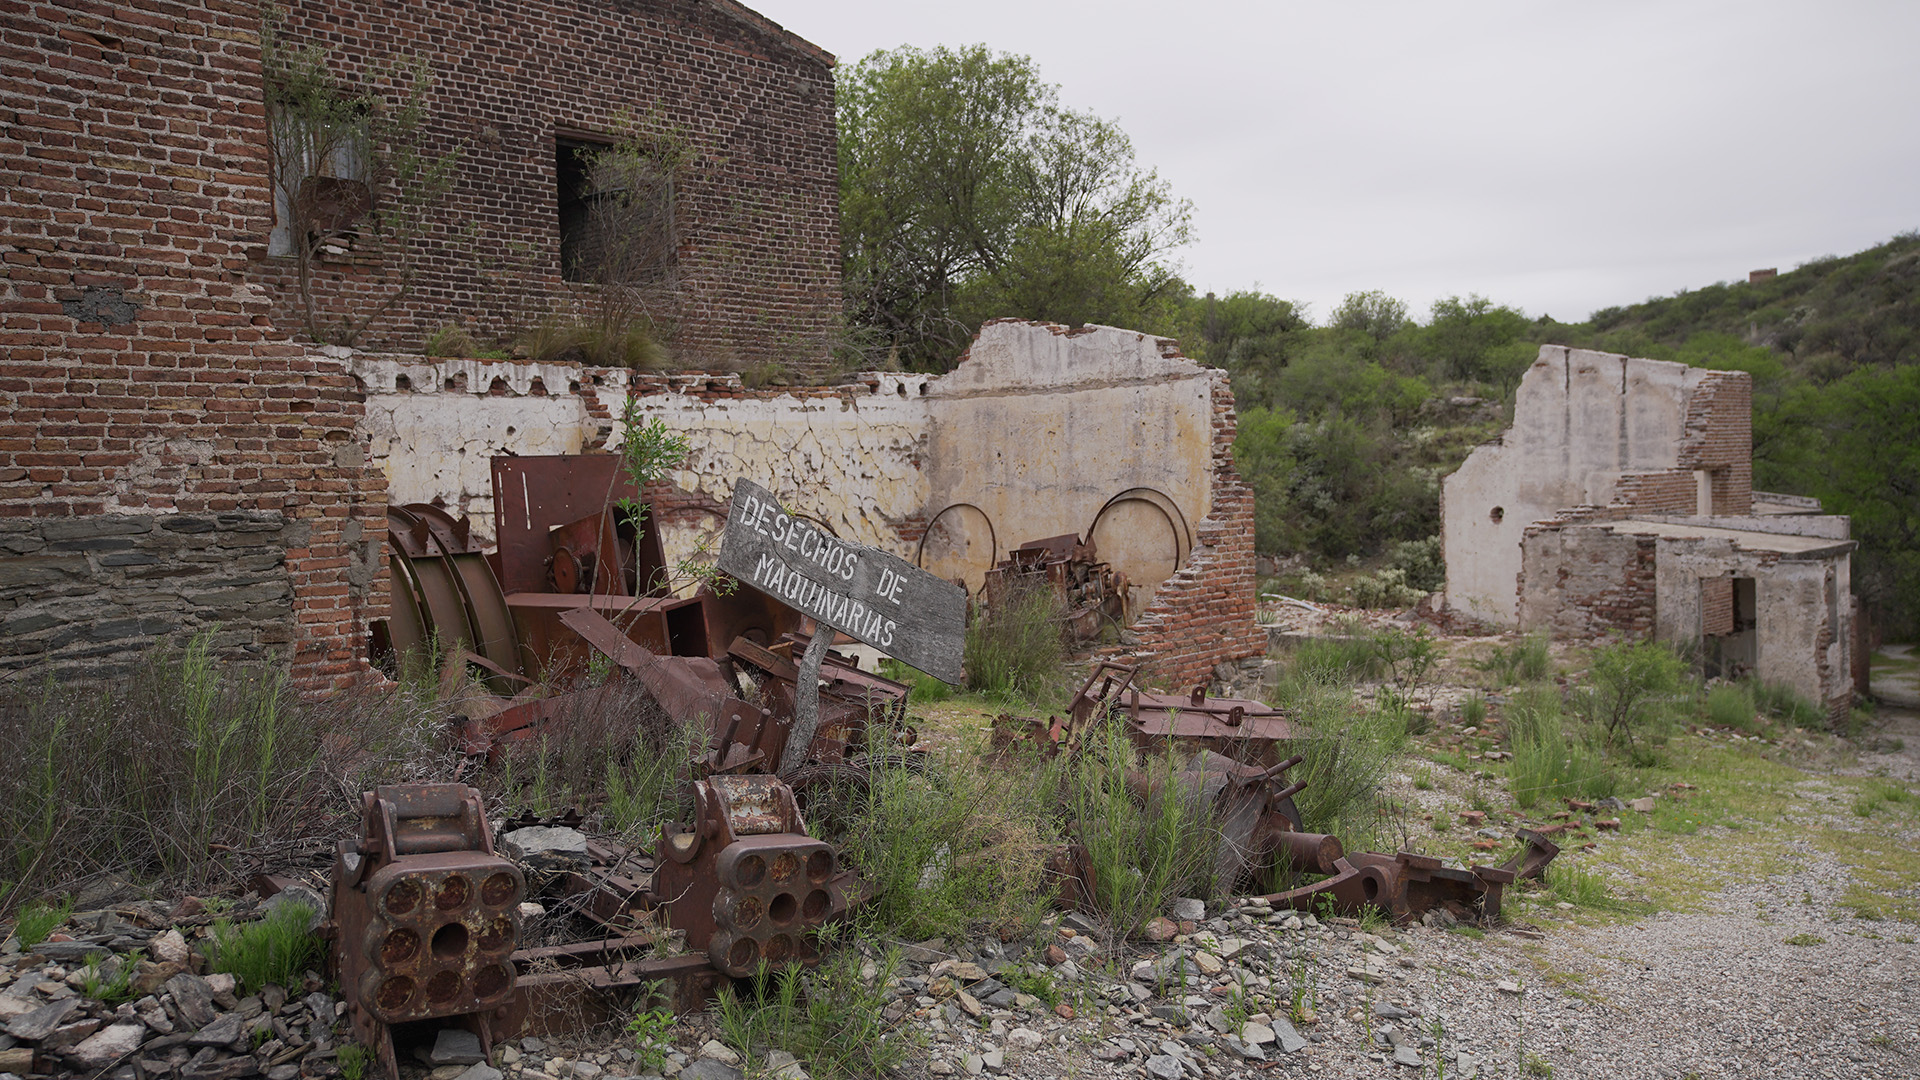 En los alrededores se encuentran edificios demolidos por el tiempo y restos de maquinaria utilizada hace 100 años